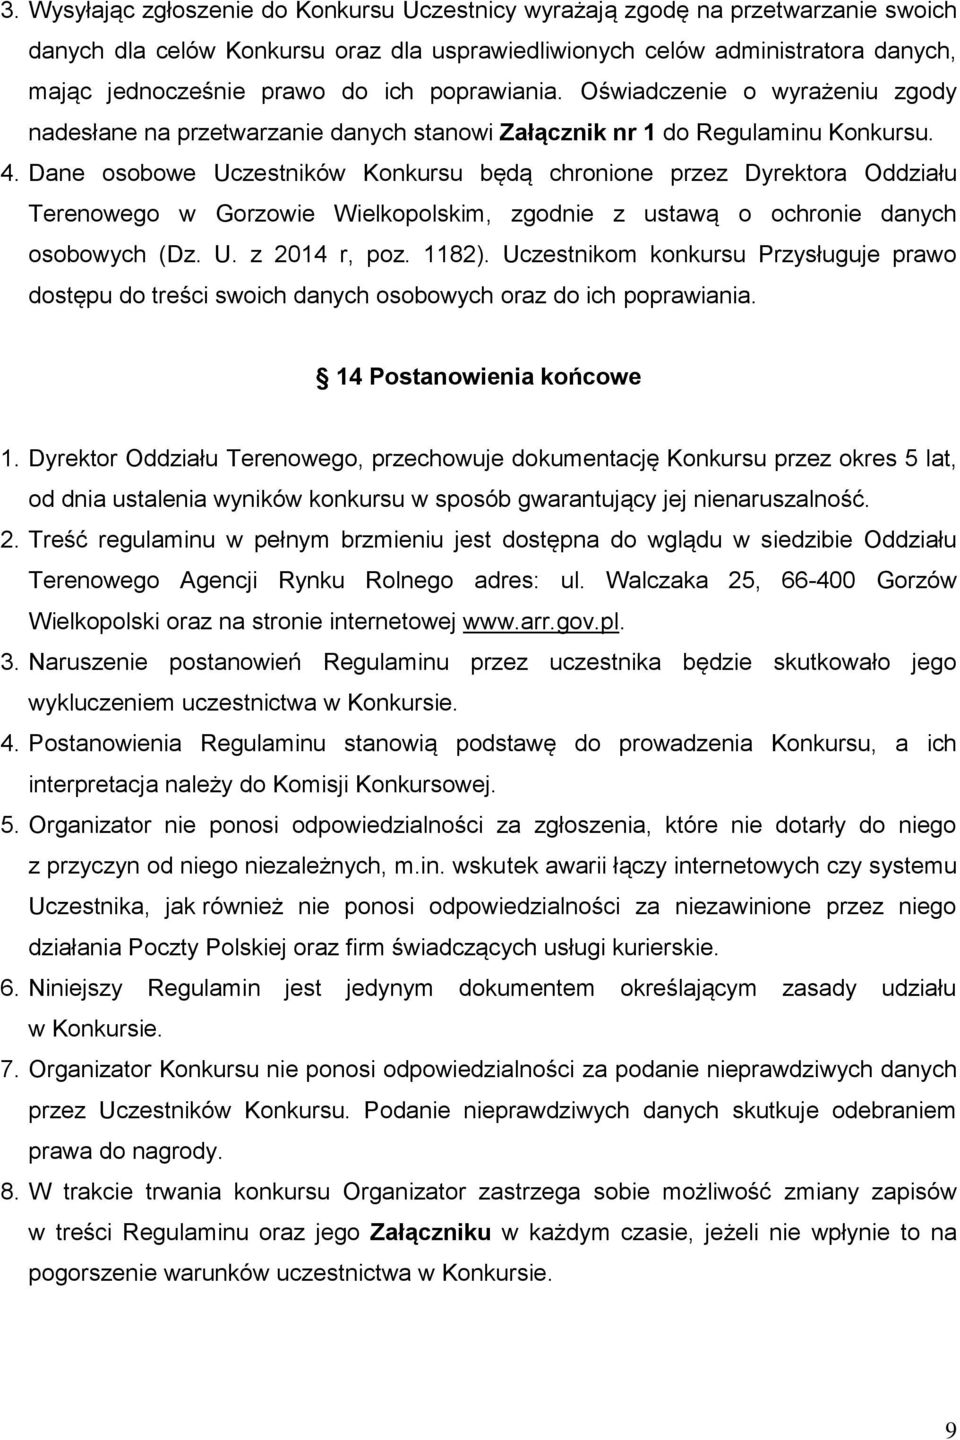 Dane osobowe Uczestników Konkursu będą chronione przez Dyrektora Oddziału Terenowego w Gorzowie Wielkopolskim, zgodnie z ustawą o ochronie danych osobowych (Dz. U. z 2014 r, poz. 1182).